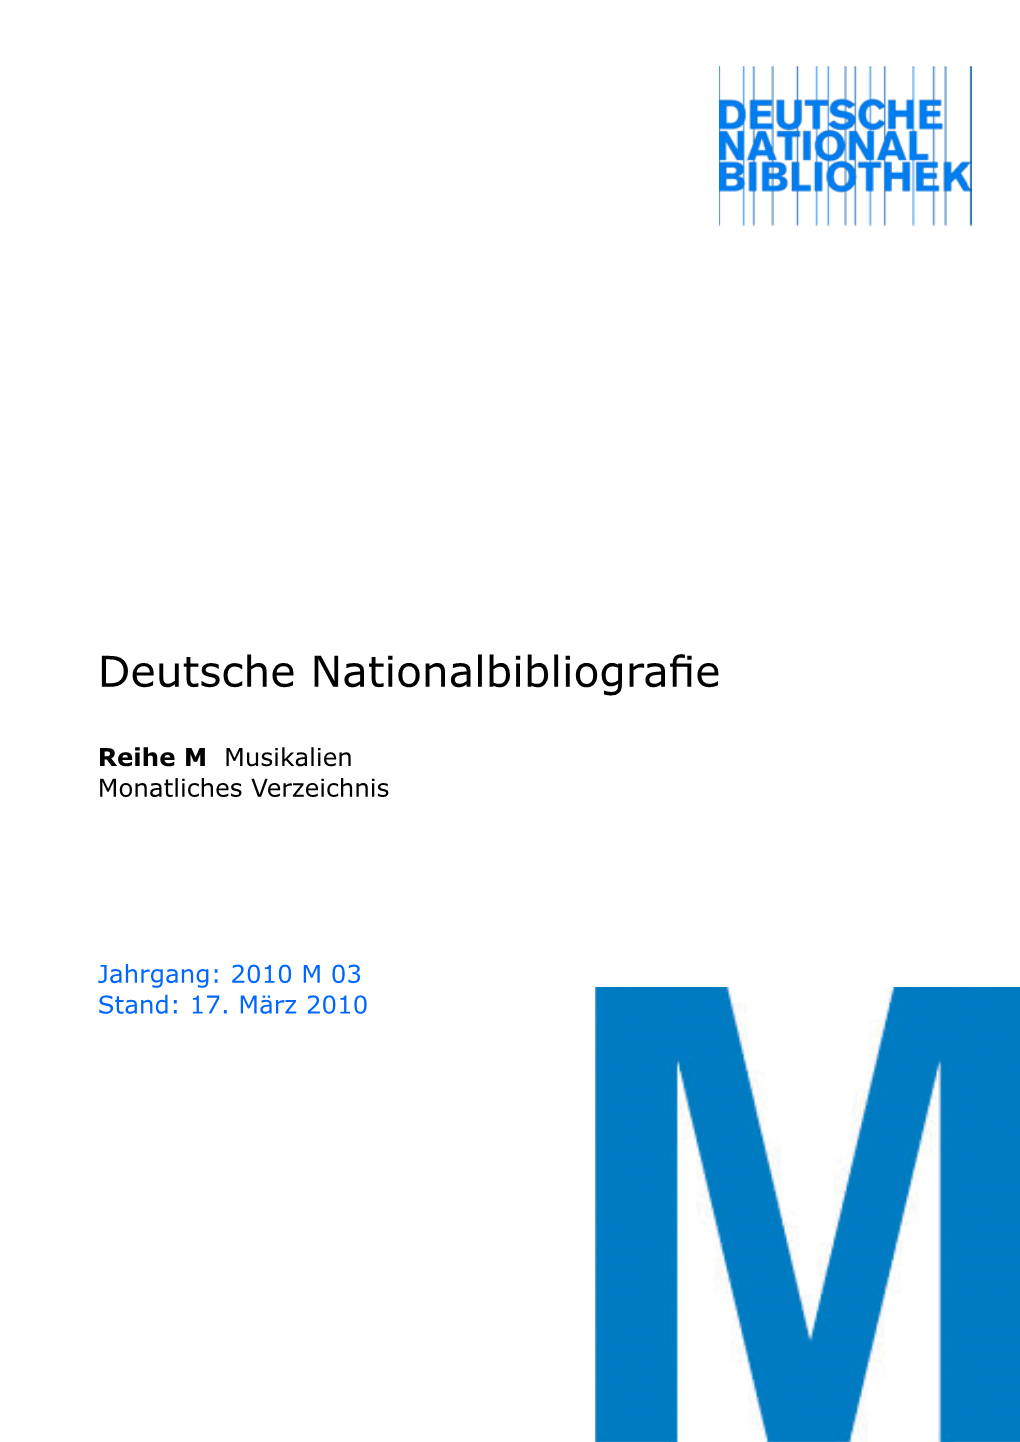 Deutsche Nationalbibliografie 2010 M 03